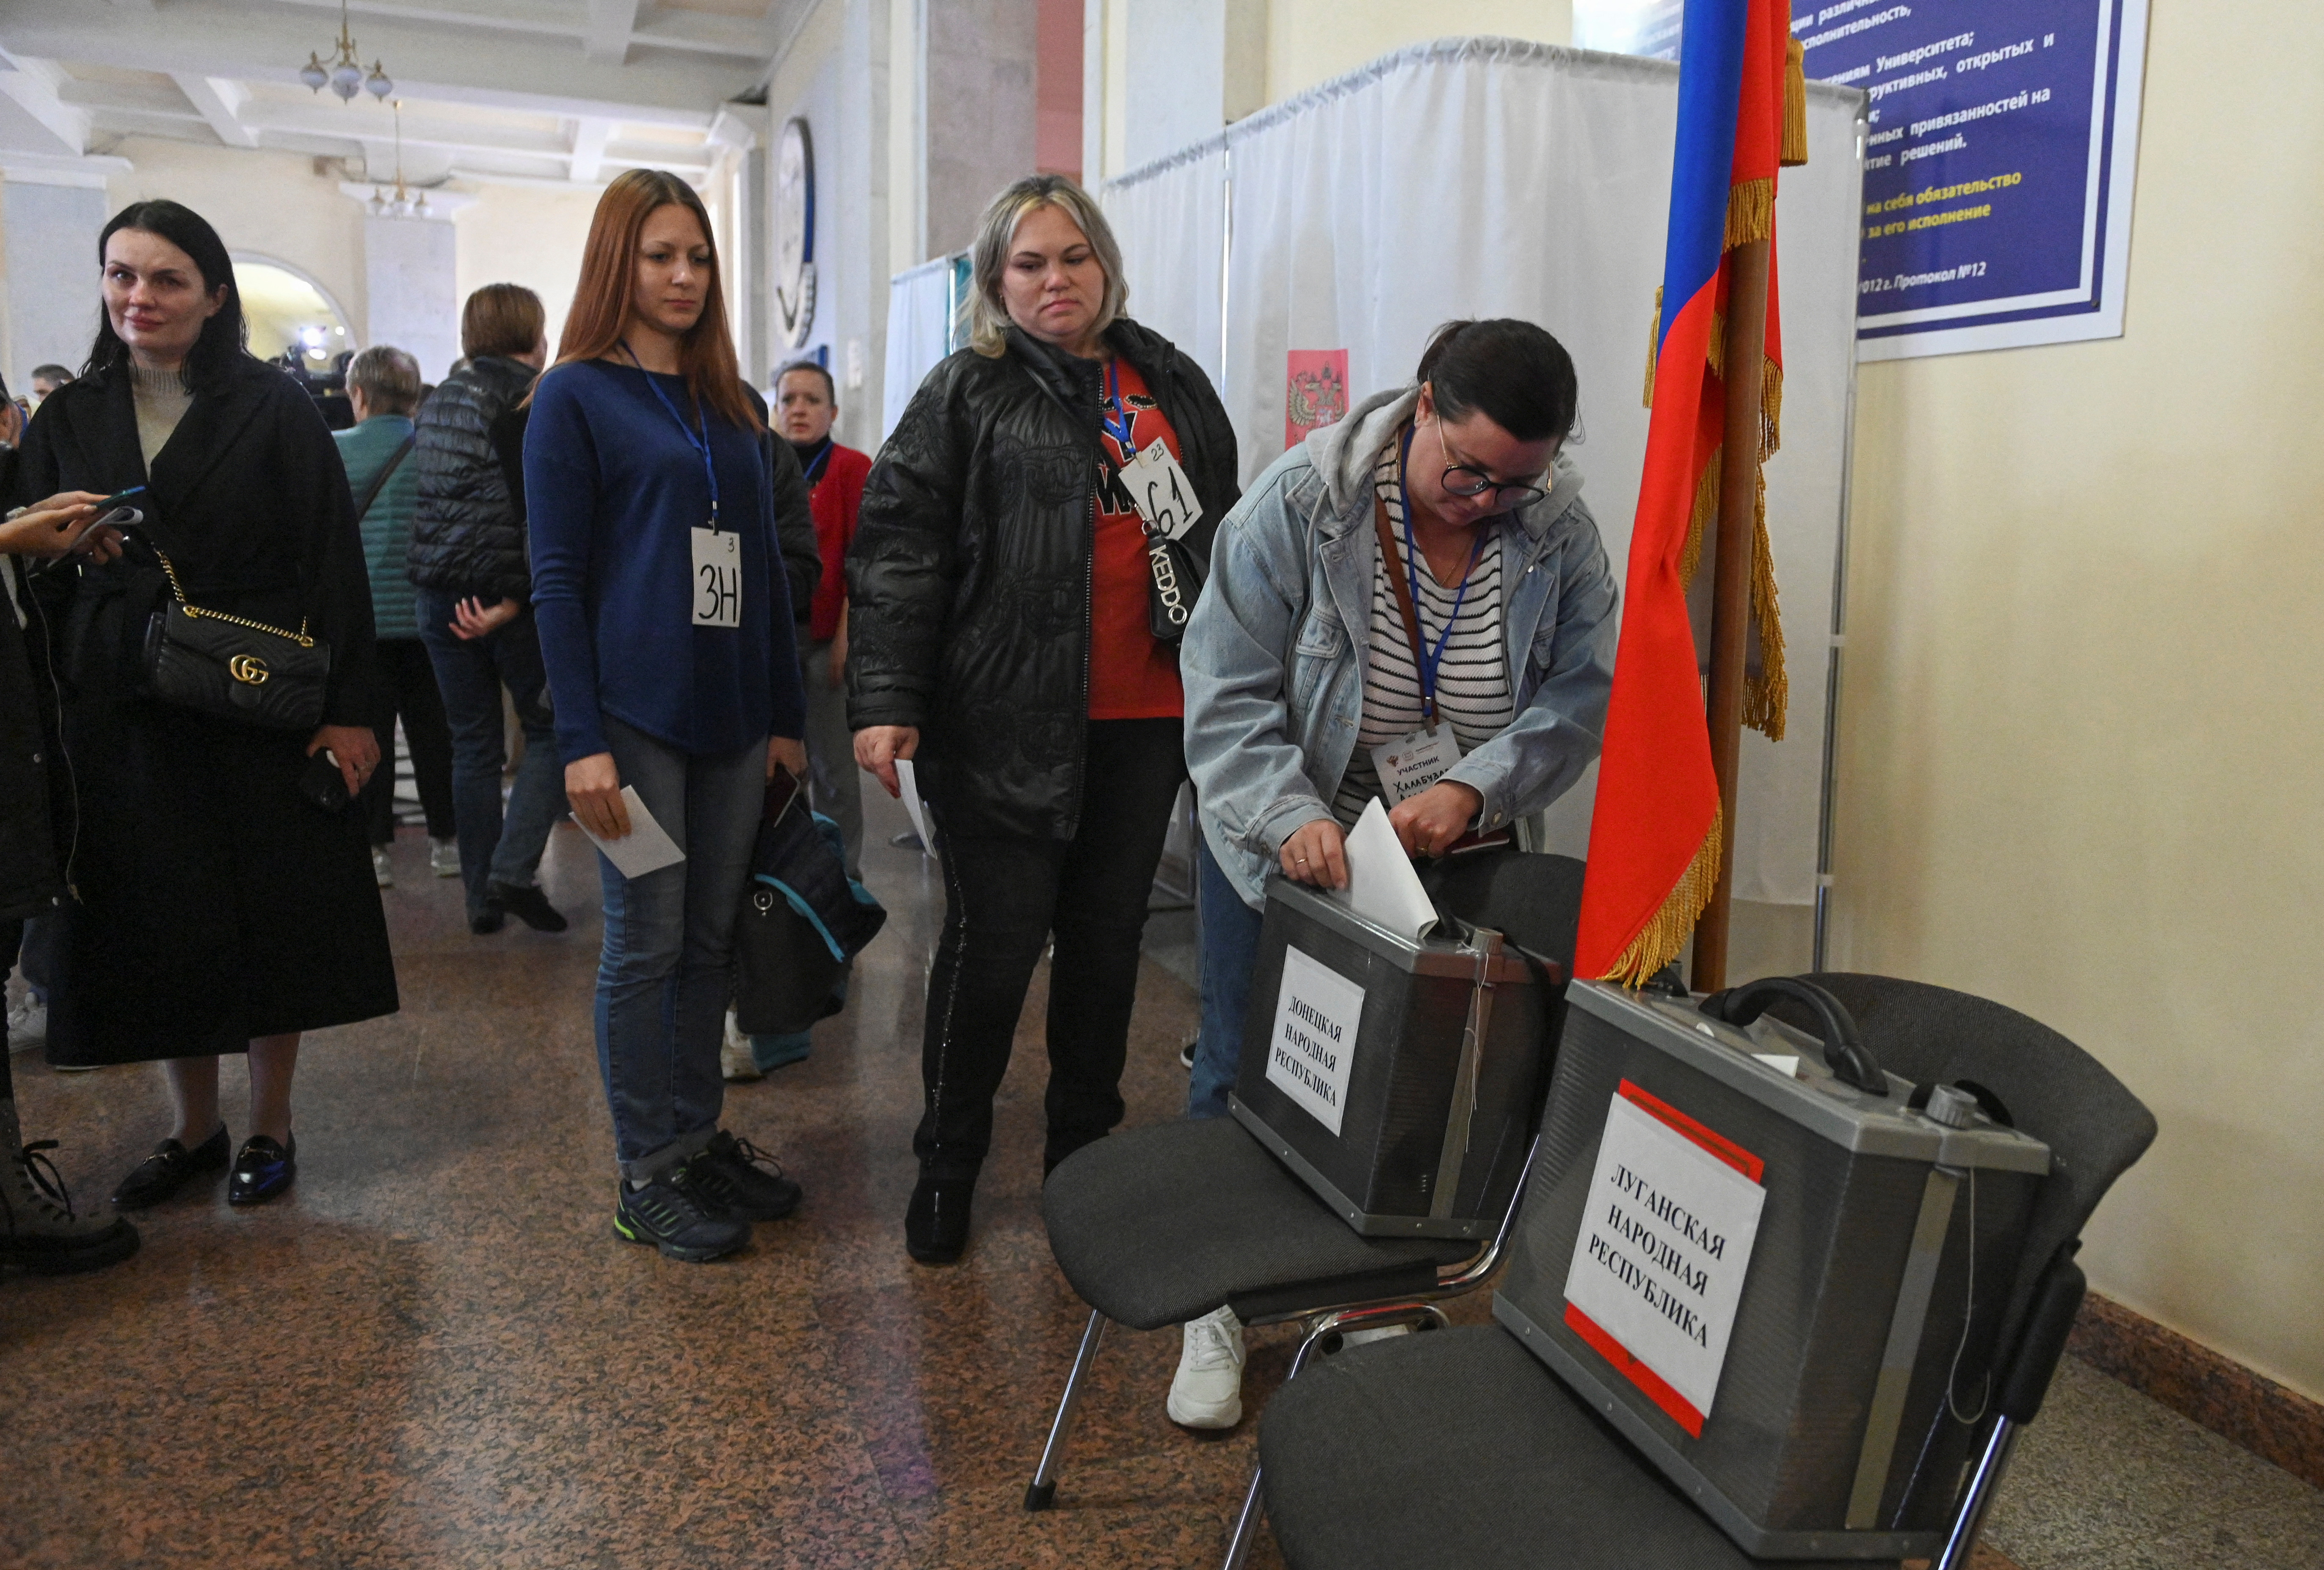 El régimen de Venezuela envió observadores a los referendos ilegítimos de anexión convocados por Putin en territorios ucranianos